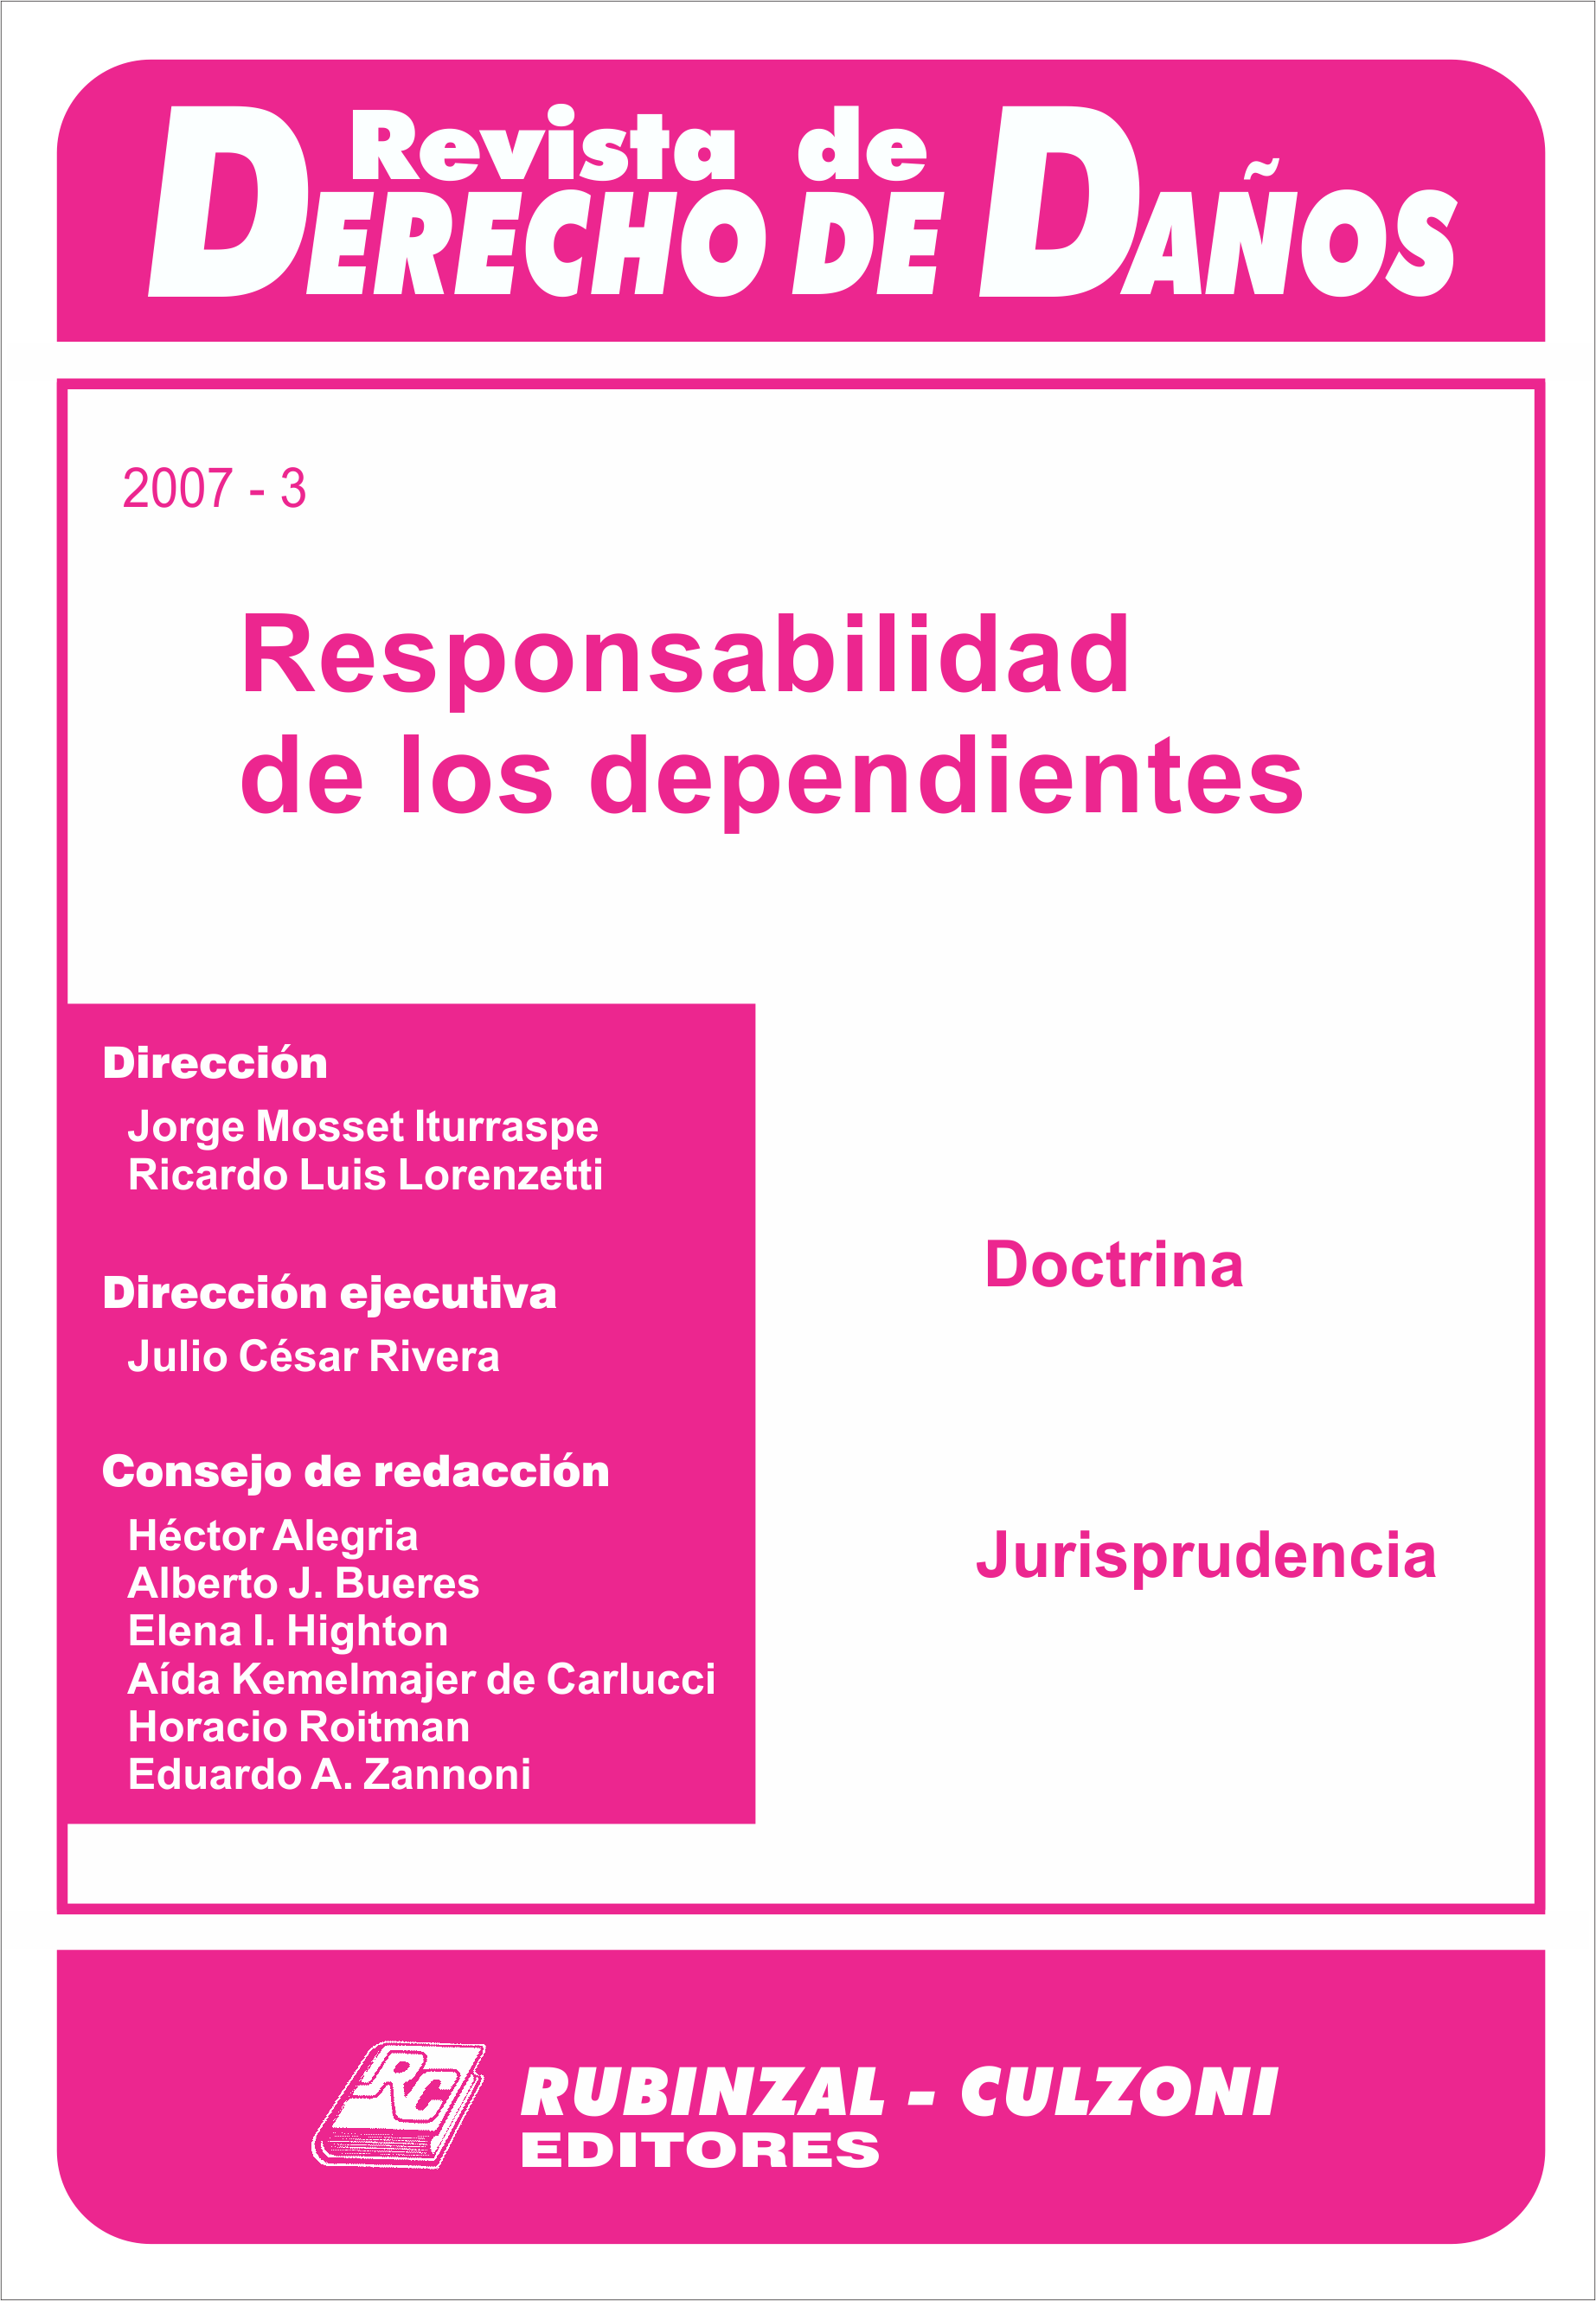 Revista de Derecho de Daños - Responsabilidad de los dependientes.